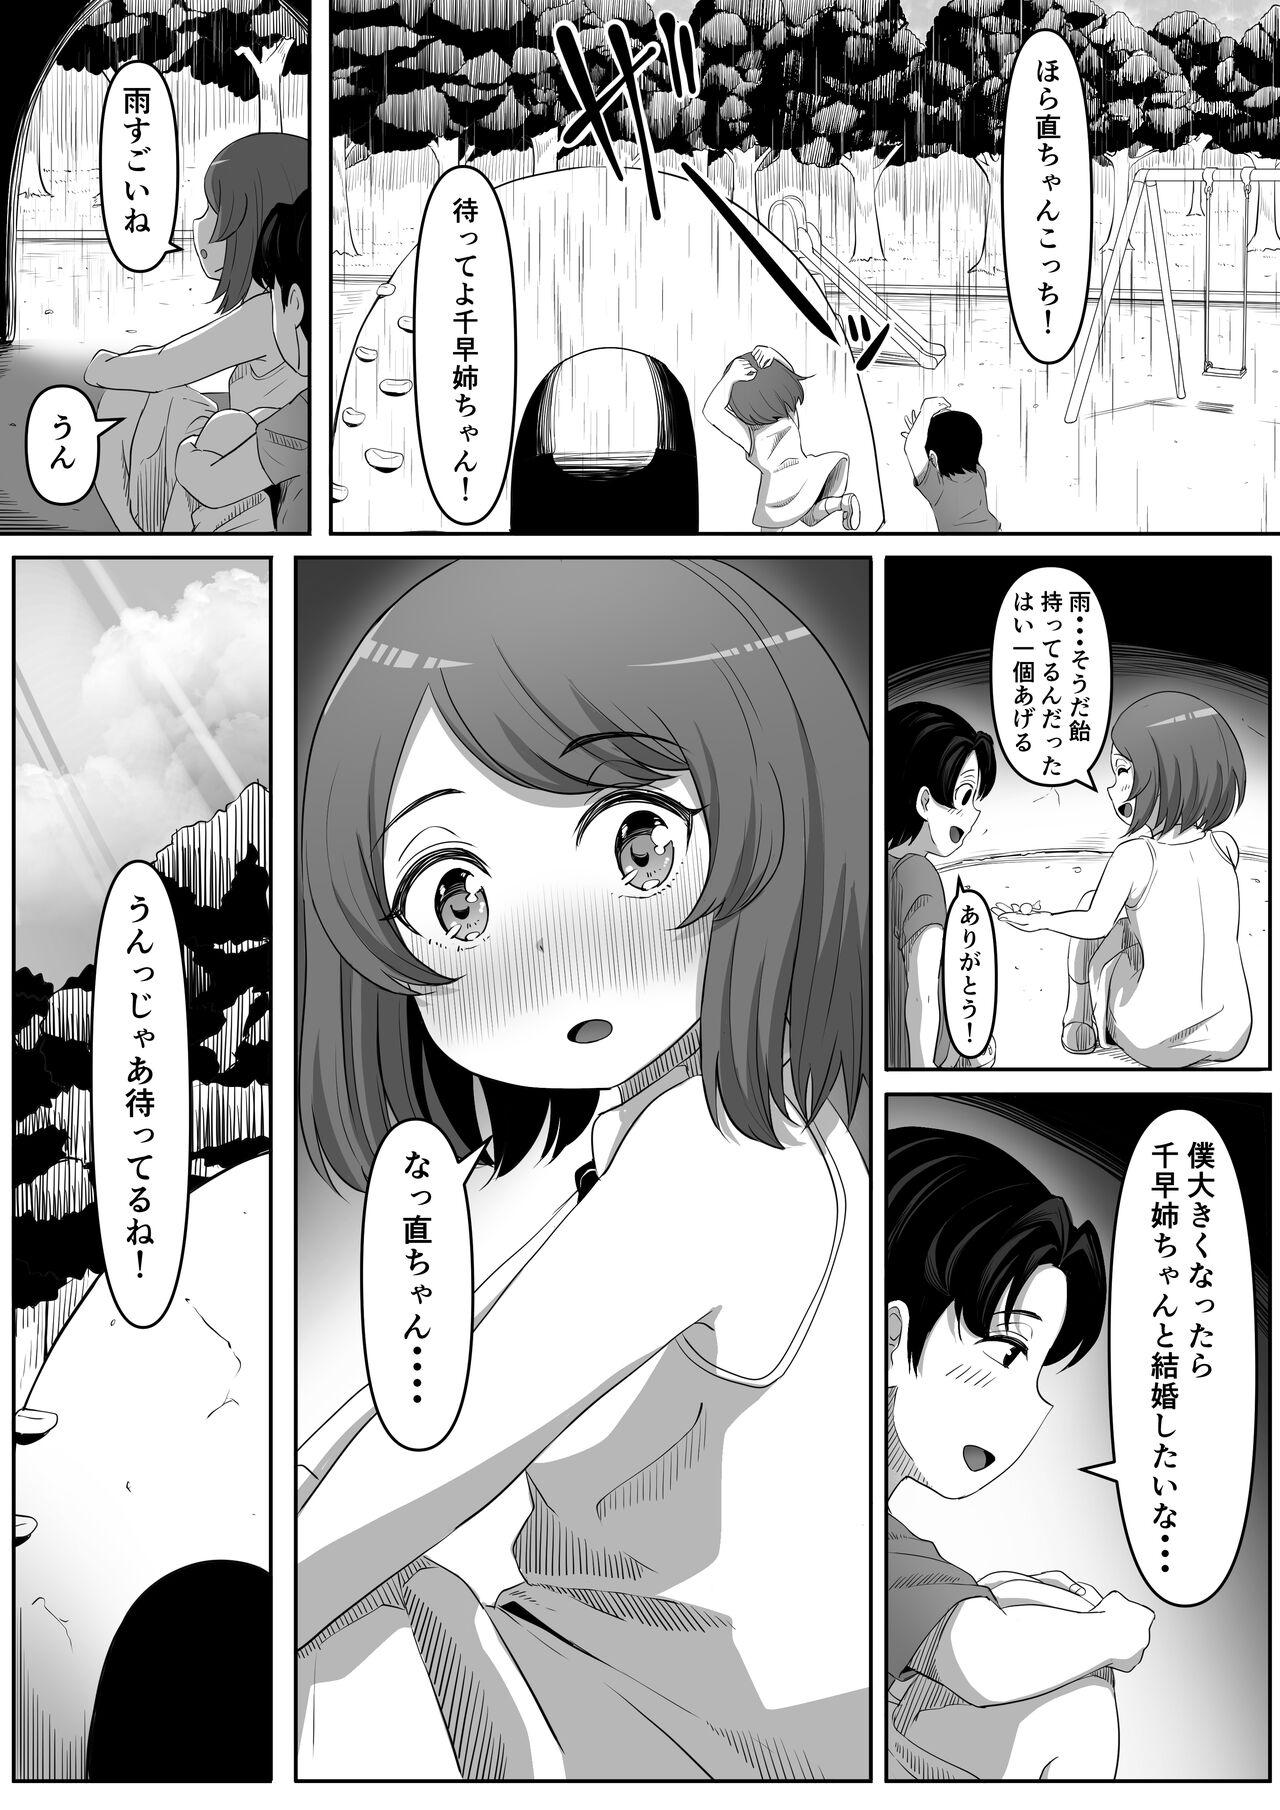 Asian Babes Tonari no Yasashii Onee-san wa Yandere datta - Original 8teenxxx - Page 3